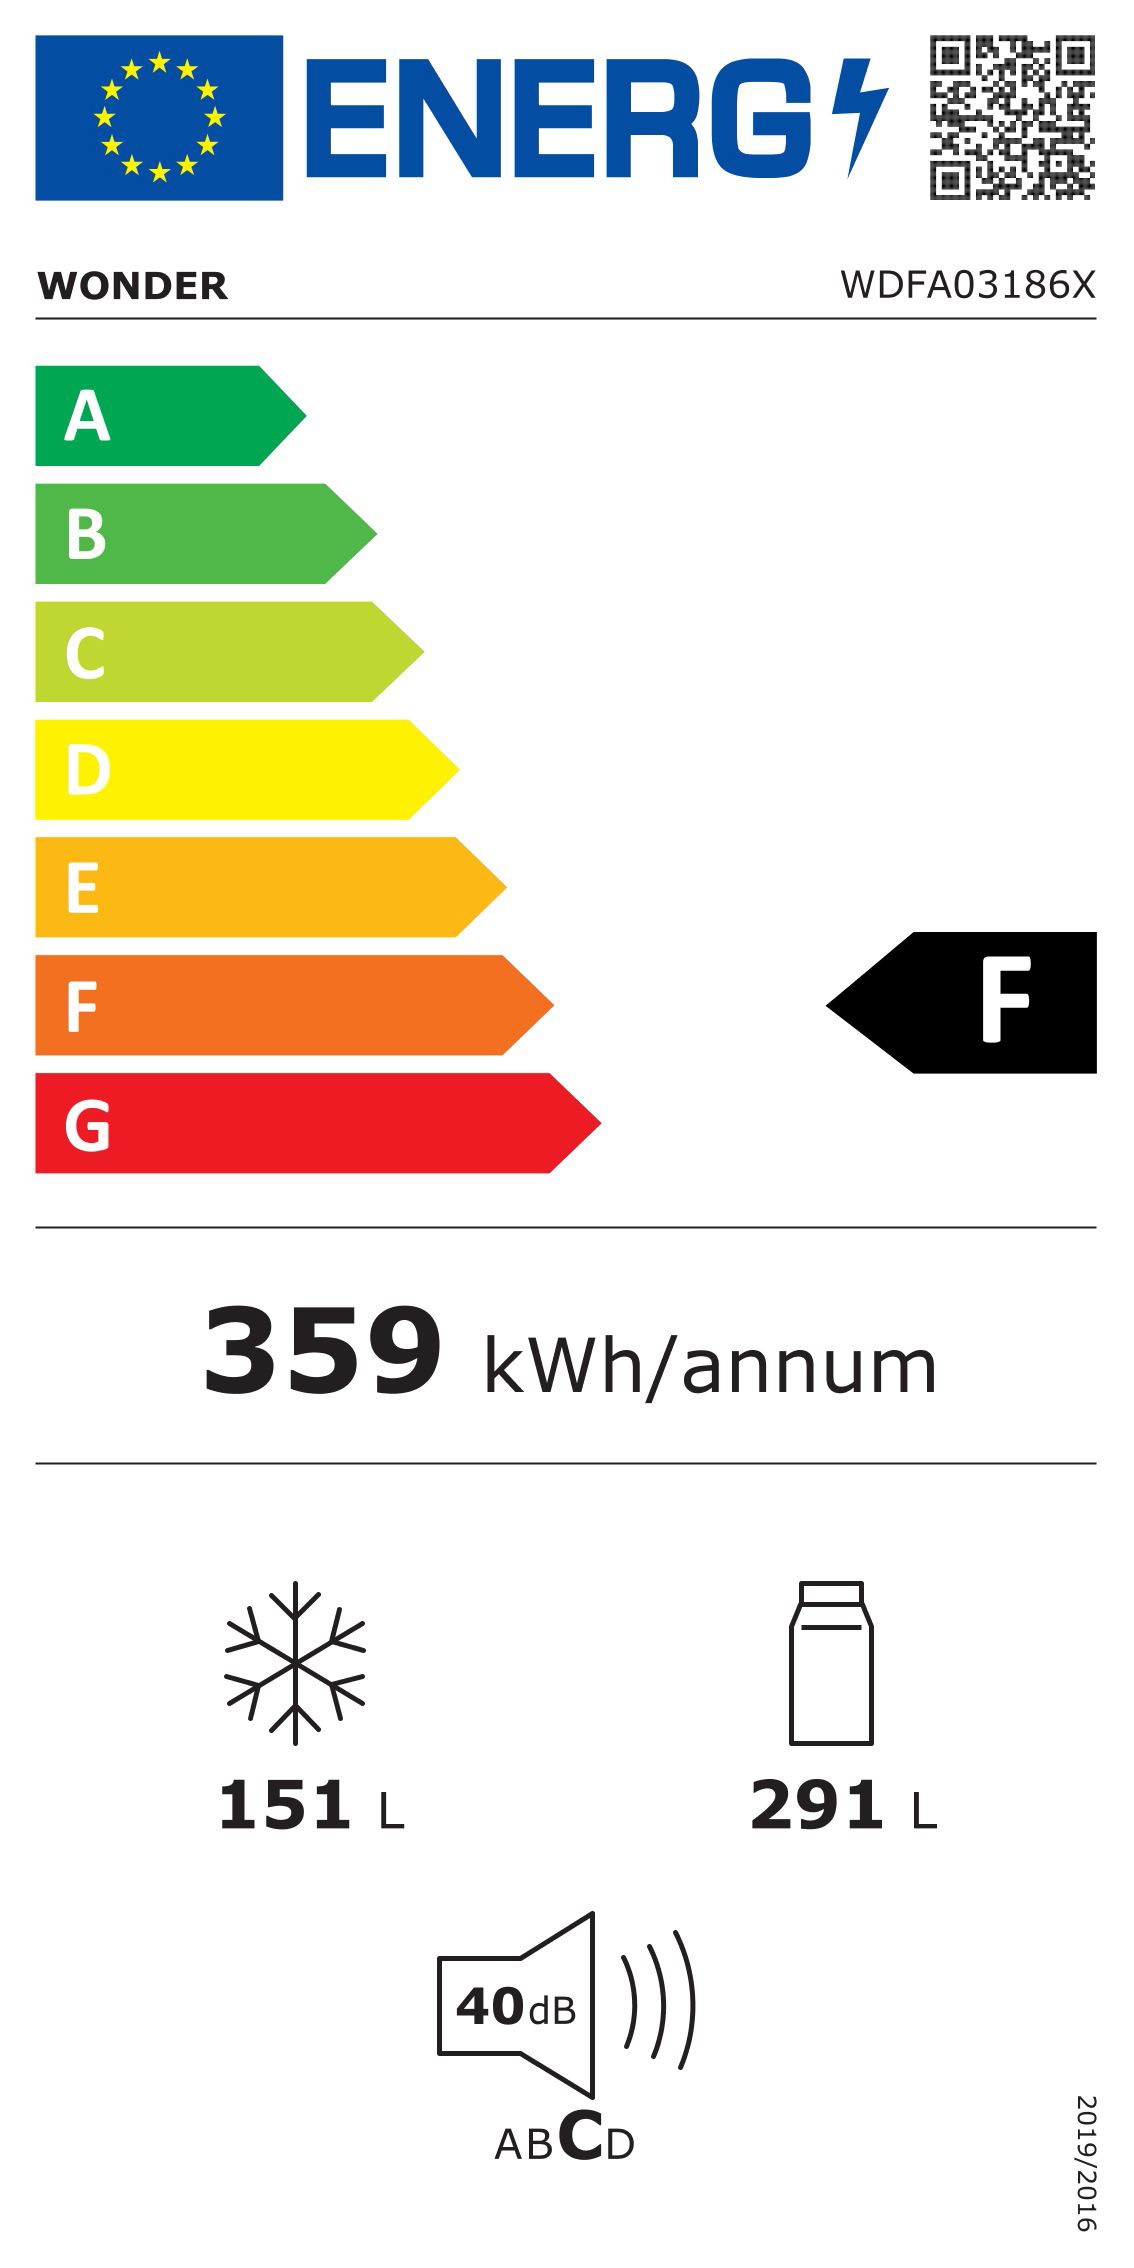 Etiqueta de Eficiencia Energética - WDFA03186X